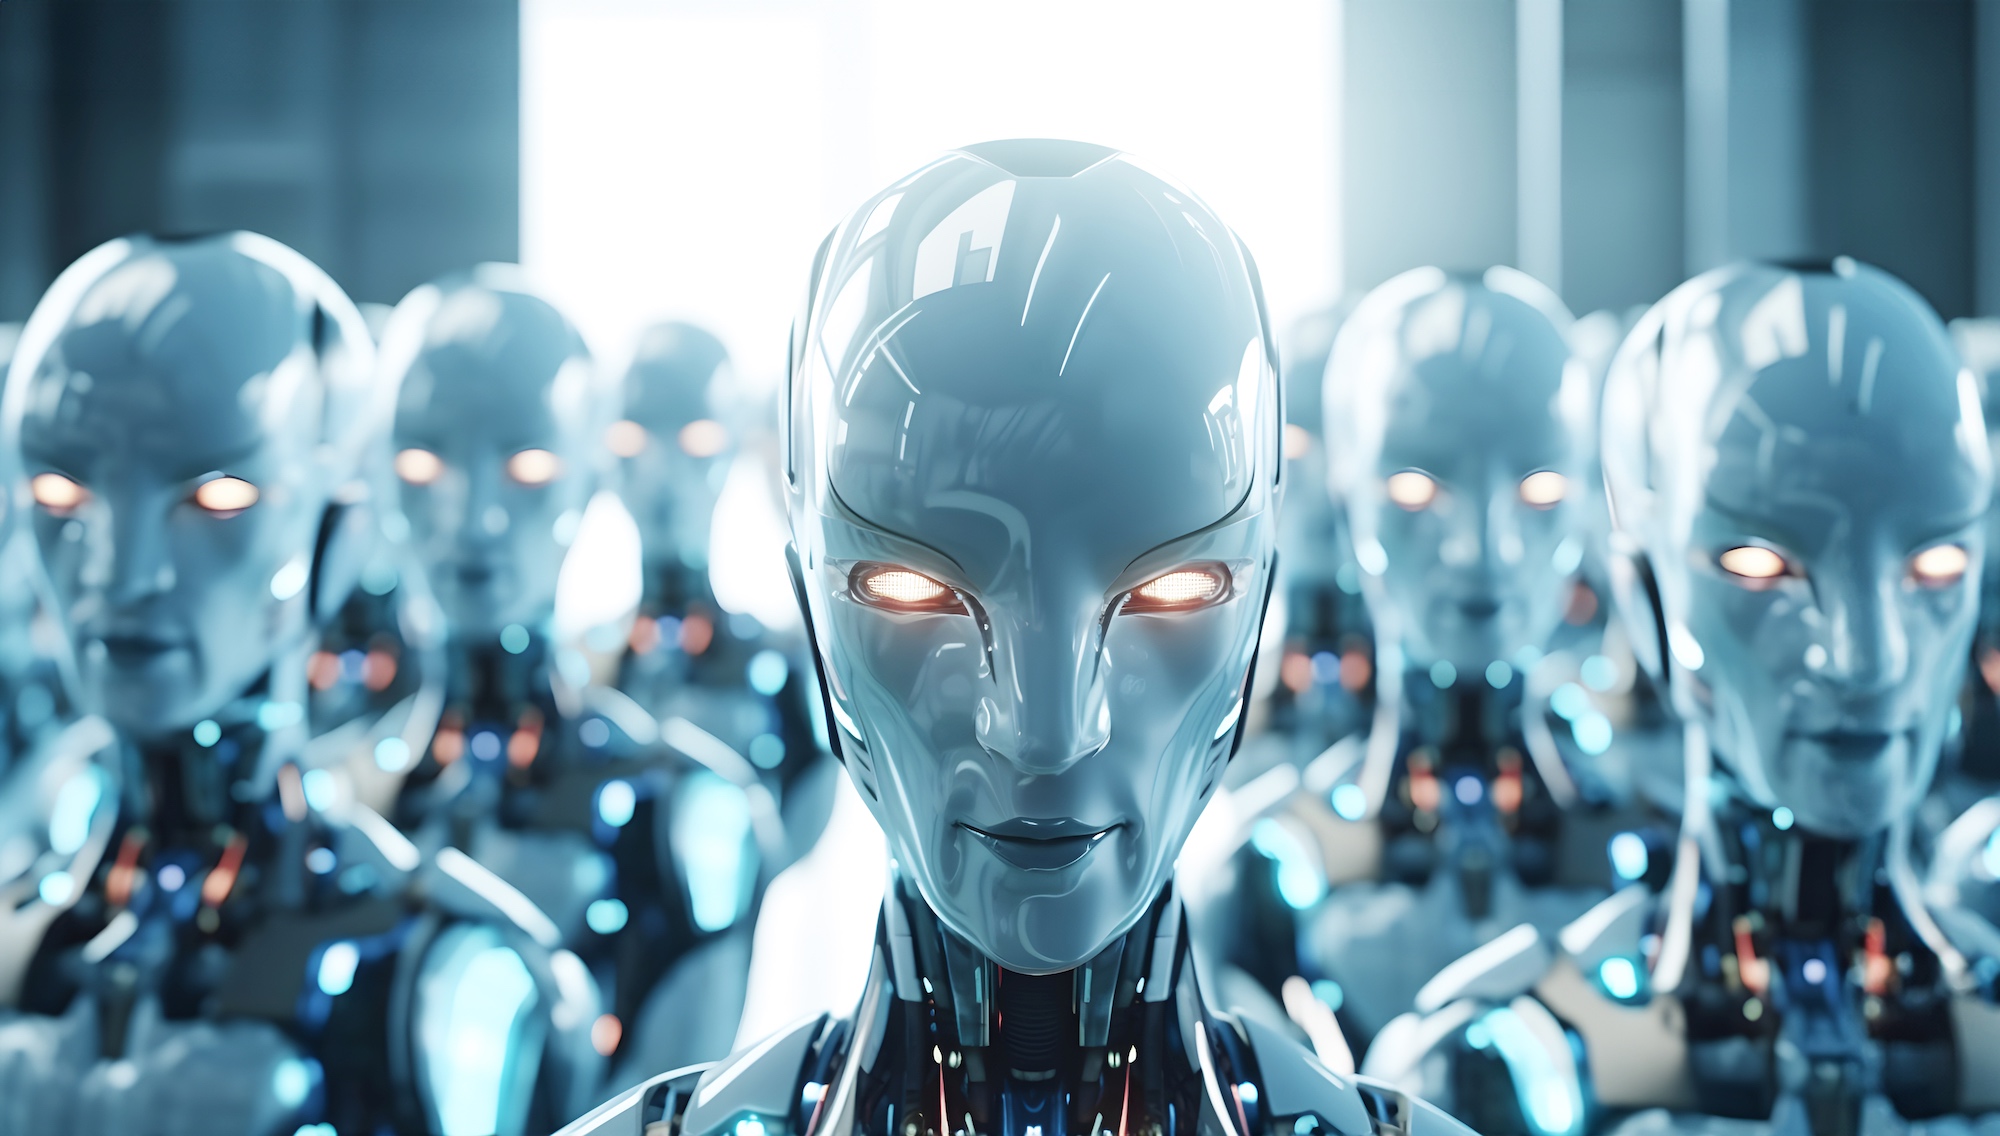 La Chine ambitionne d'être leader en matière de robots humanoïdes dédiés aux services à la personne. © MartaKlos, Adobe Stock